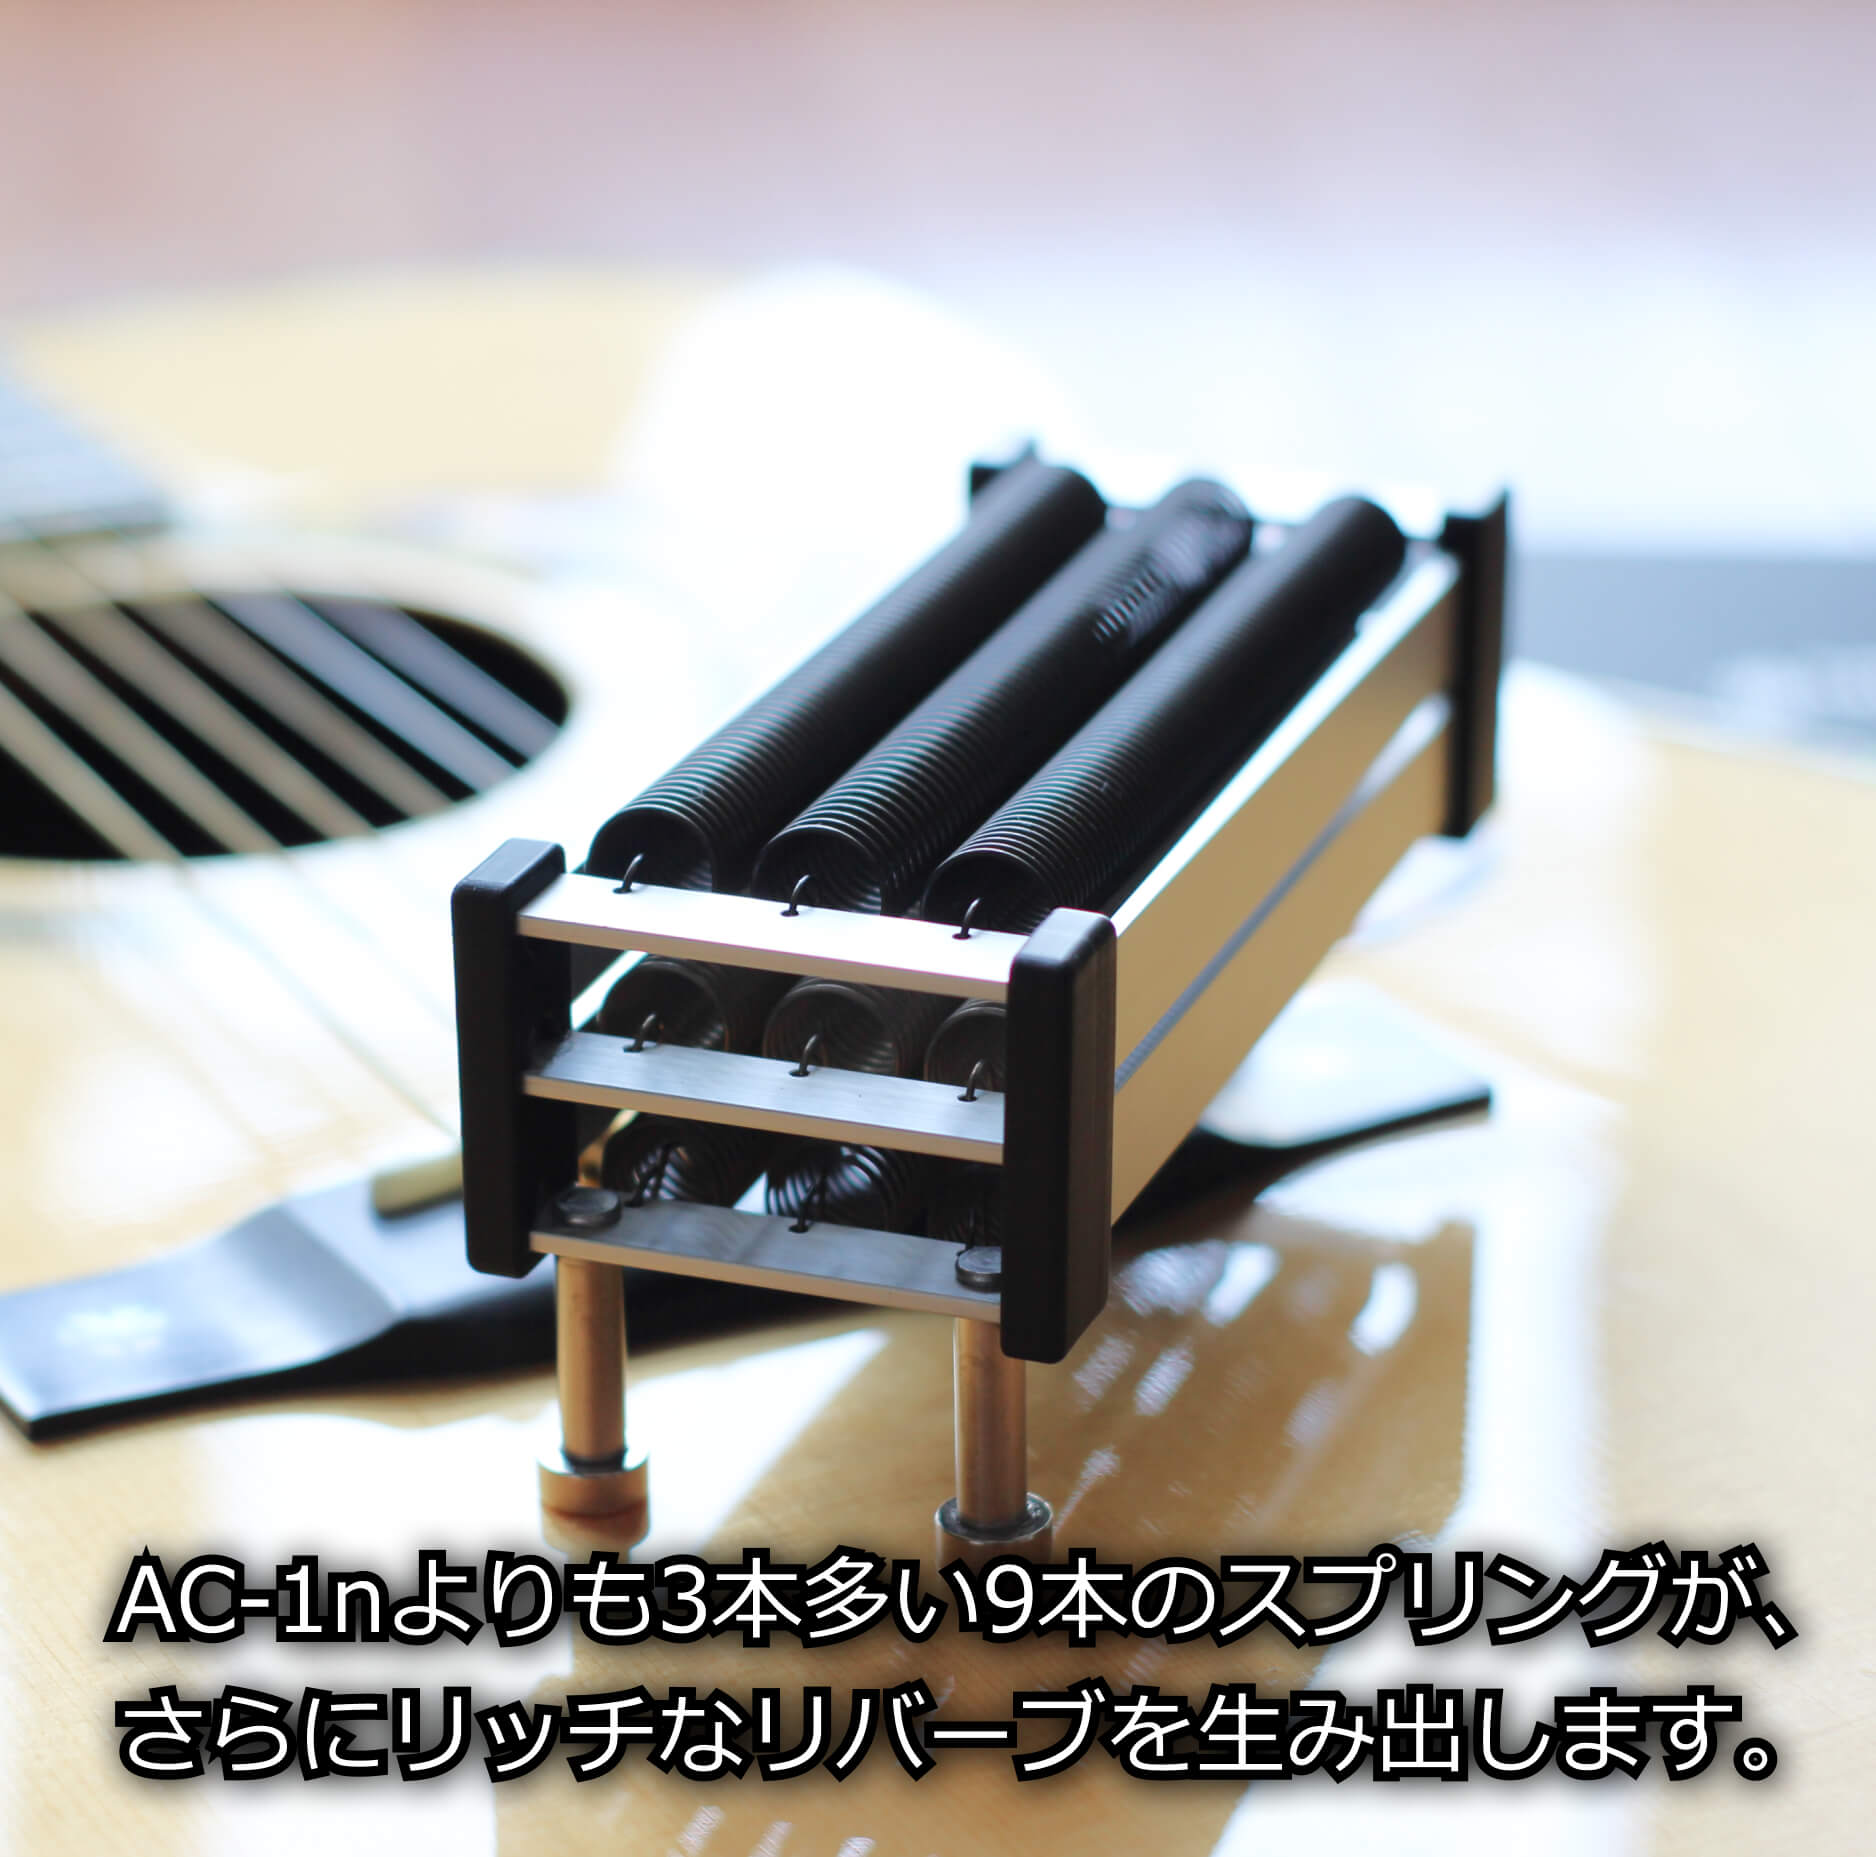 适用于原声吉他的 natu-reverb AC-1 MAX